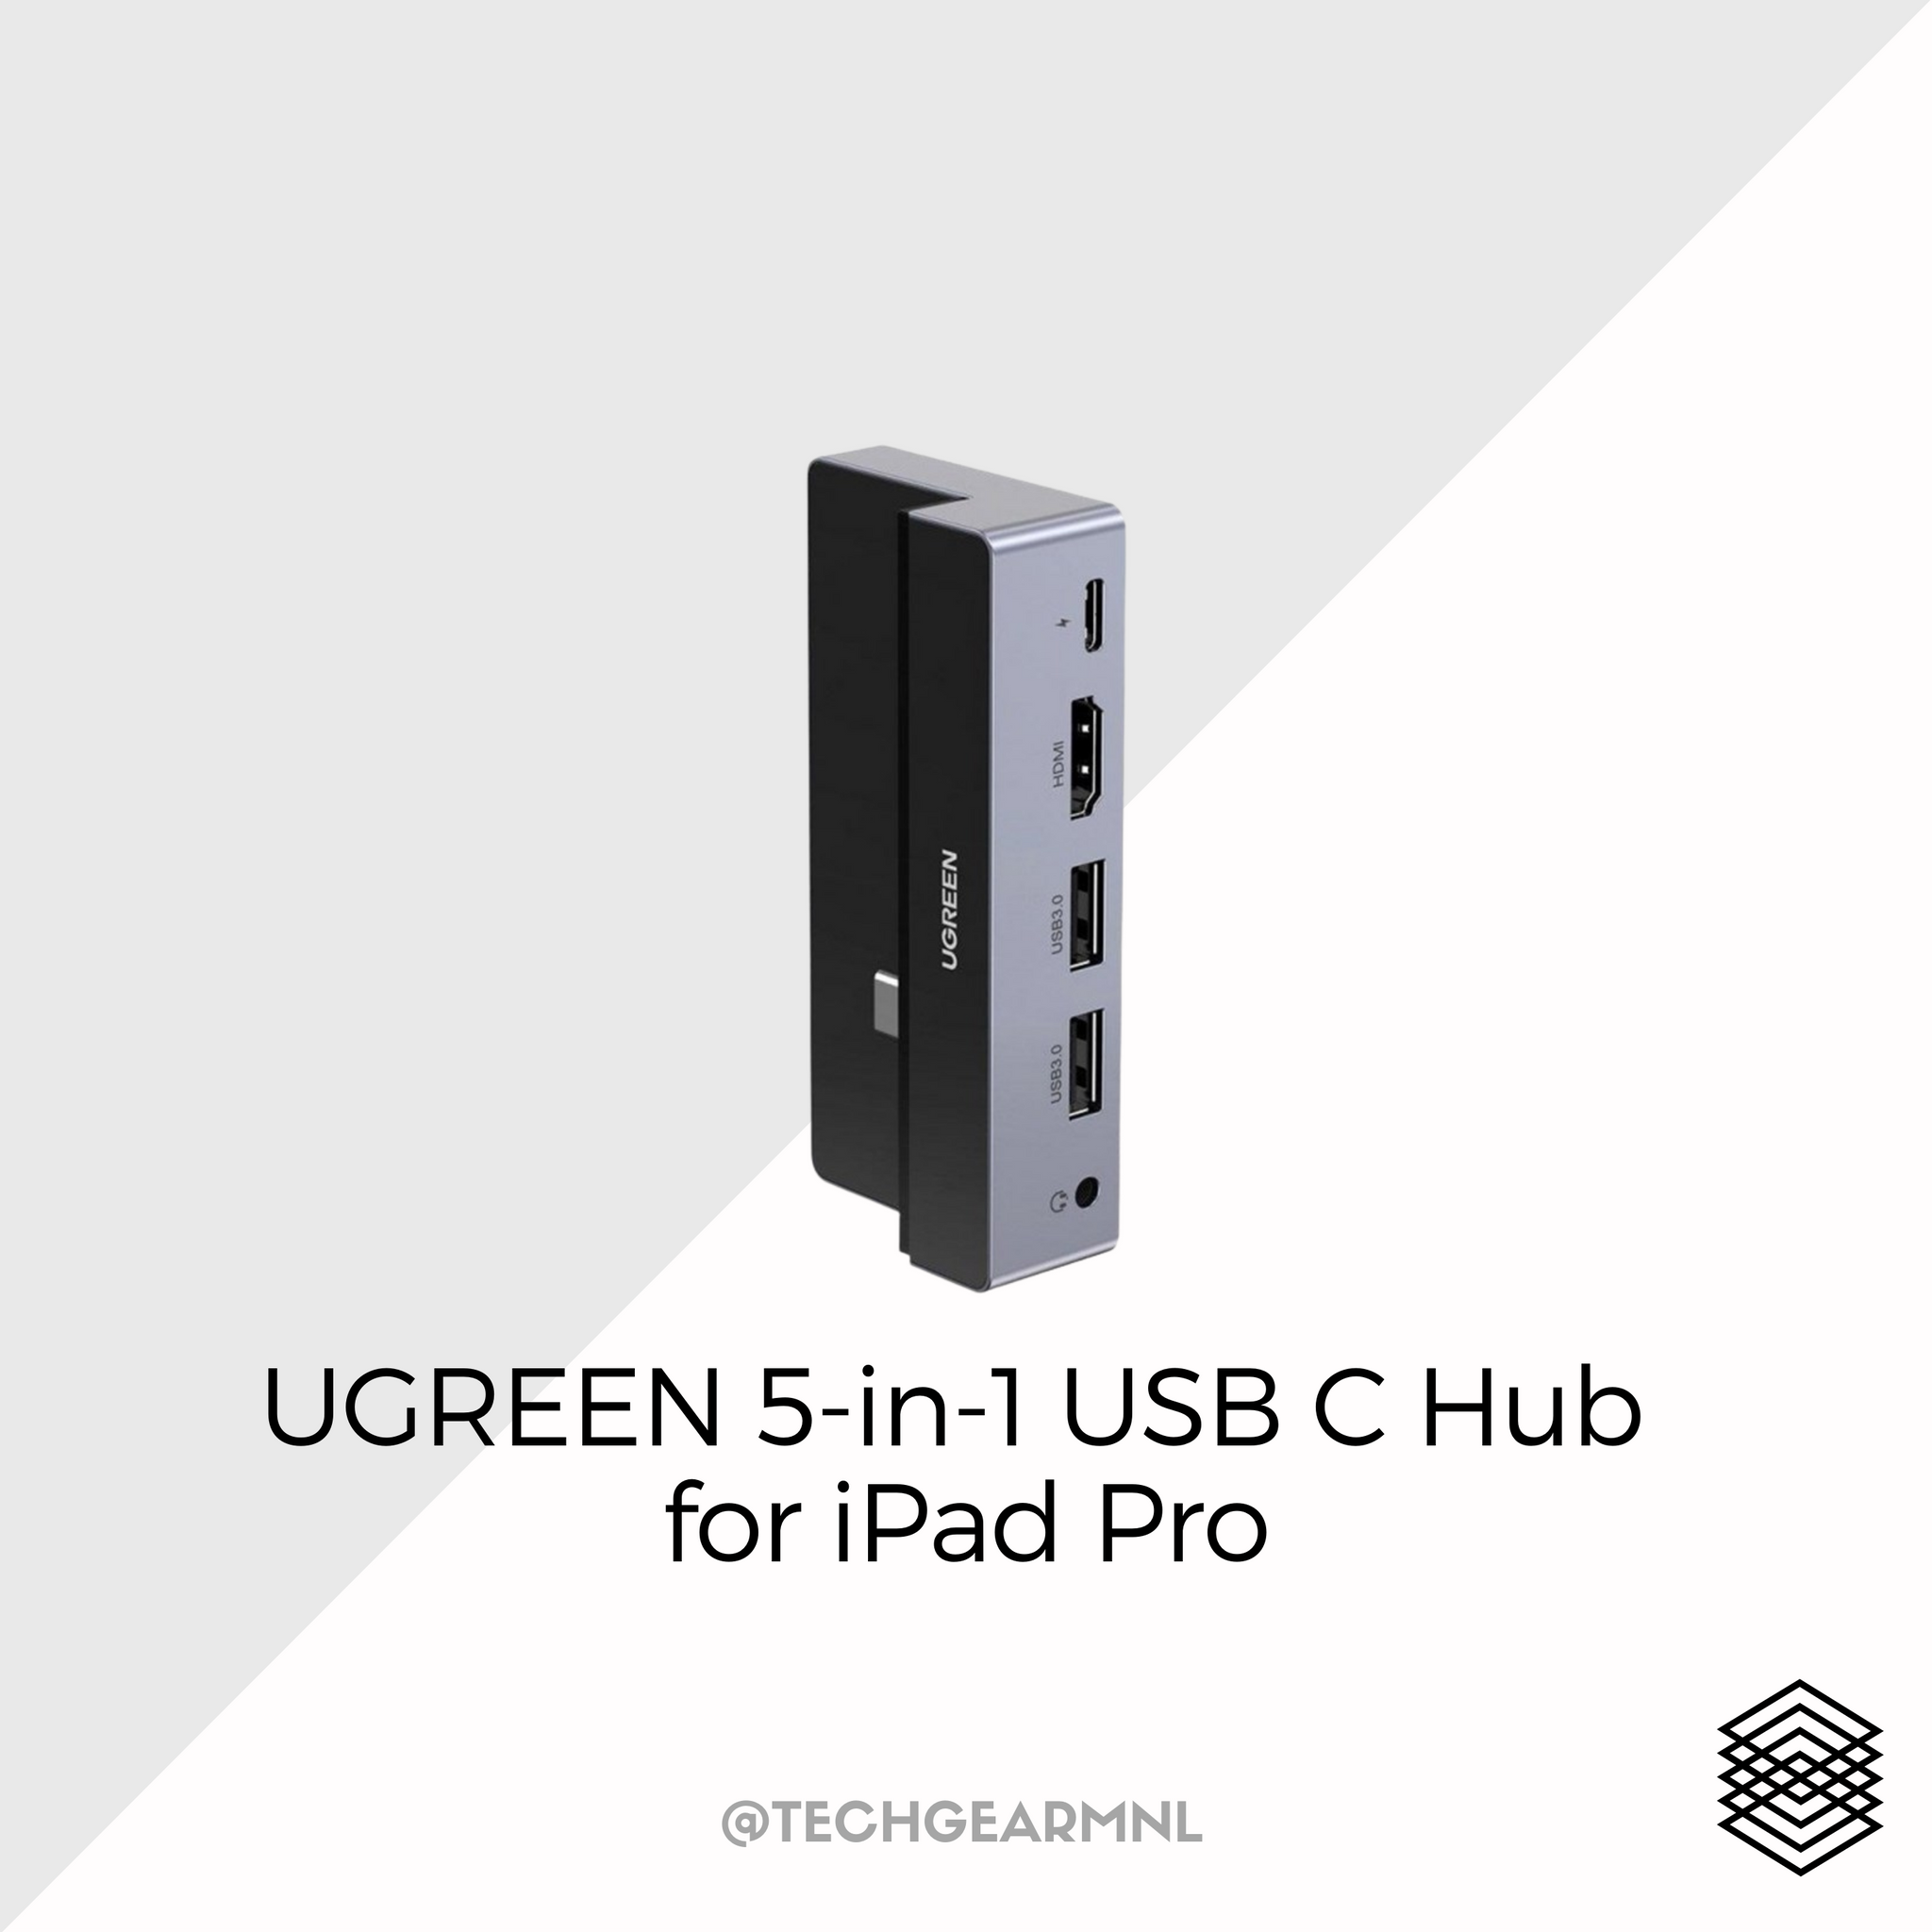 UGREEN USB C Hub, 5-in-1 USB C to 4K@60HZ HDMI Hub, 4 USB 3.0